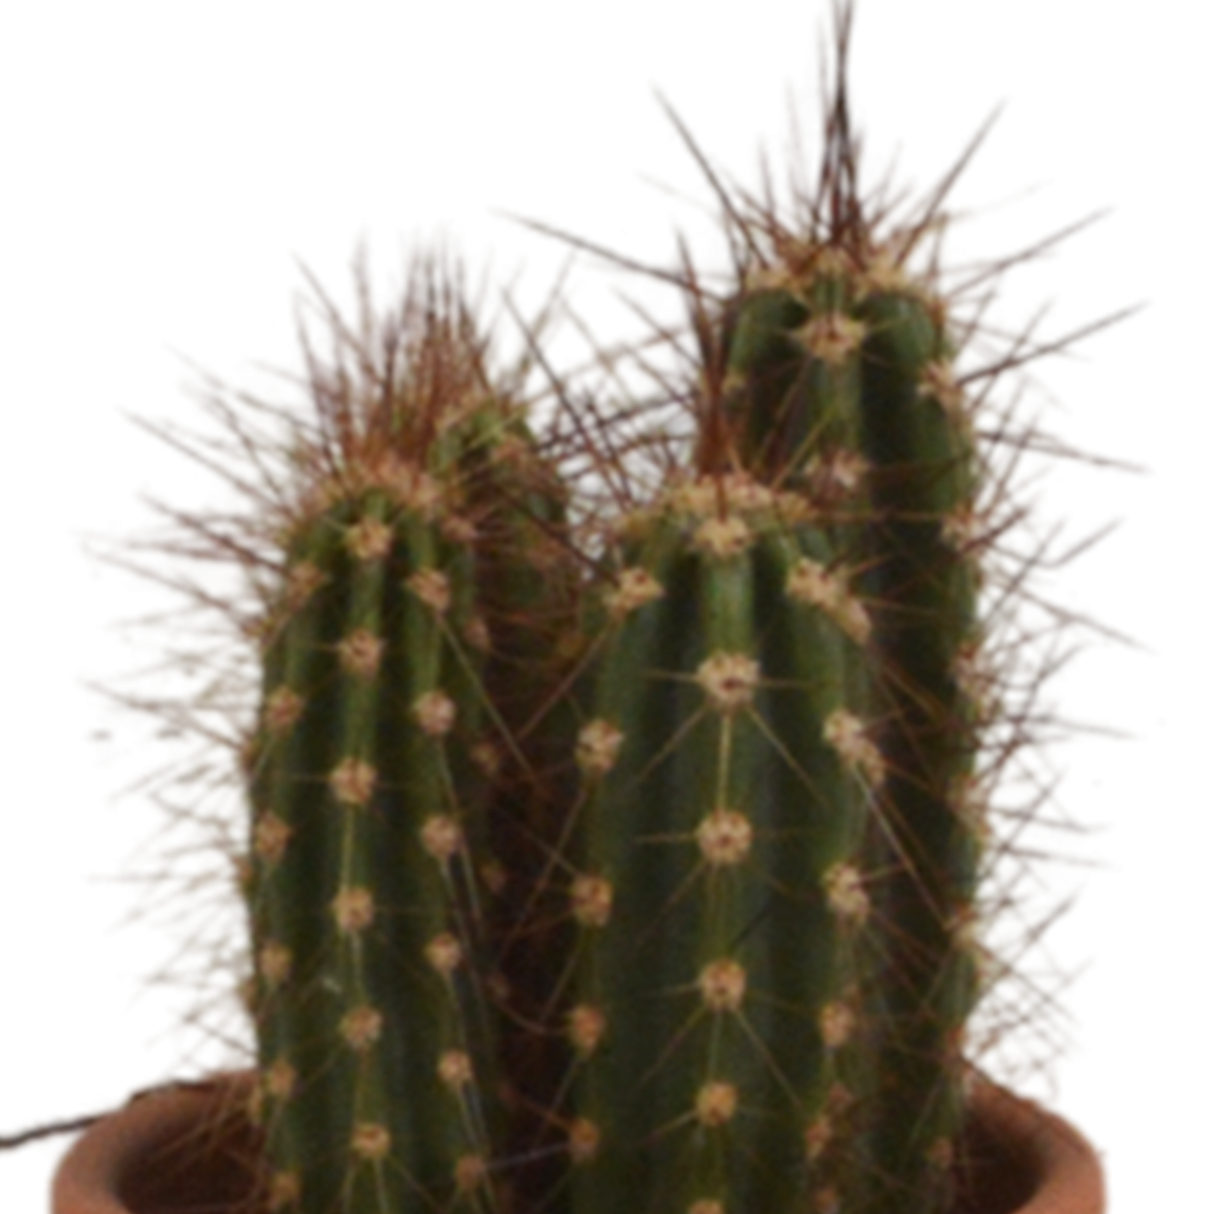 Confezione regalo cactus - Set di 5 piante, h13cm